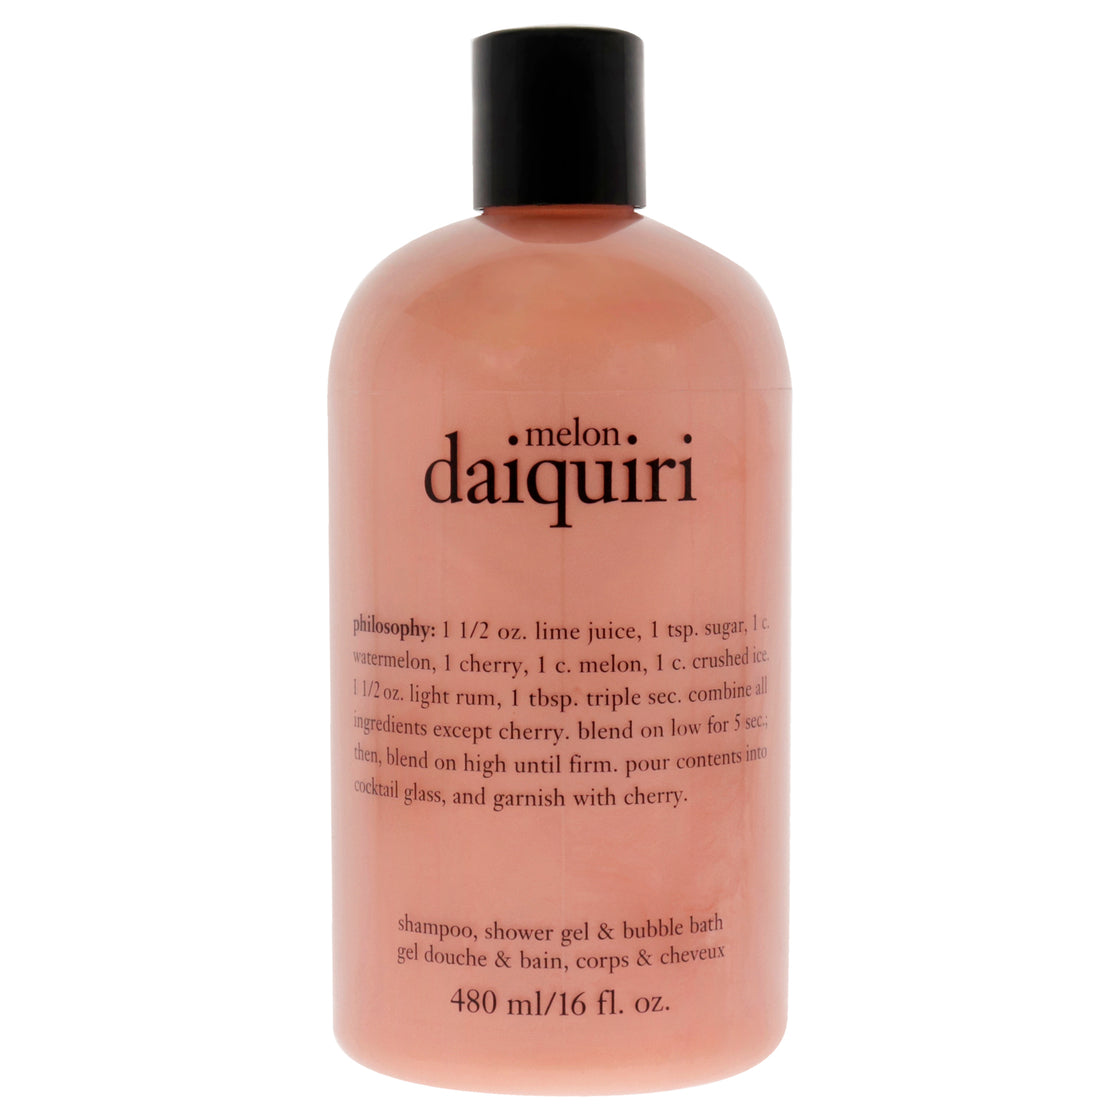 Melon Daiquiri Shampoo, Bath and Shower Gel by Philosophy for Unisex - 16 oz Shower Gel